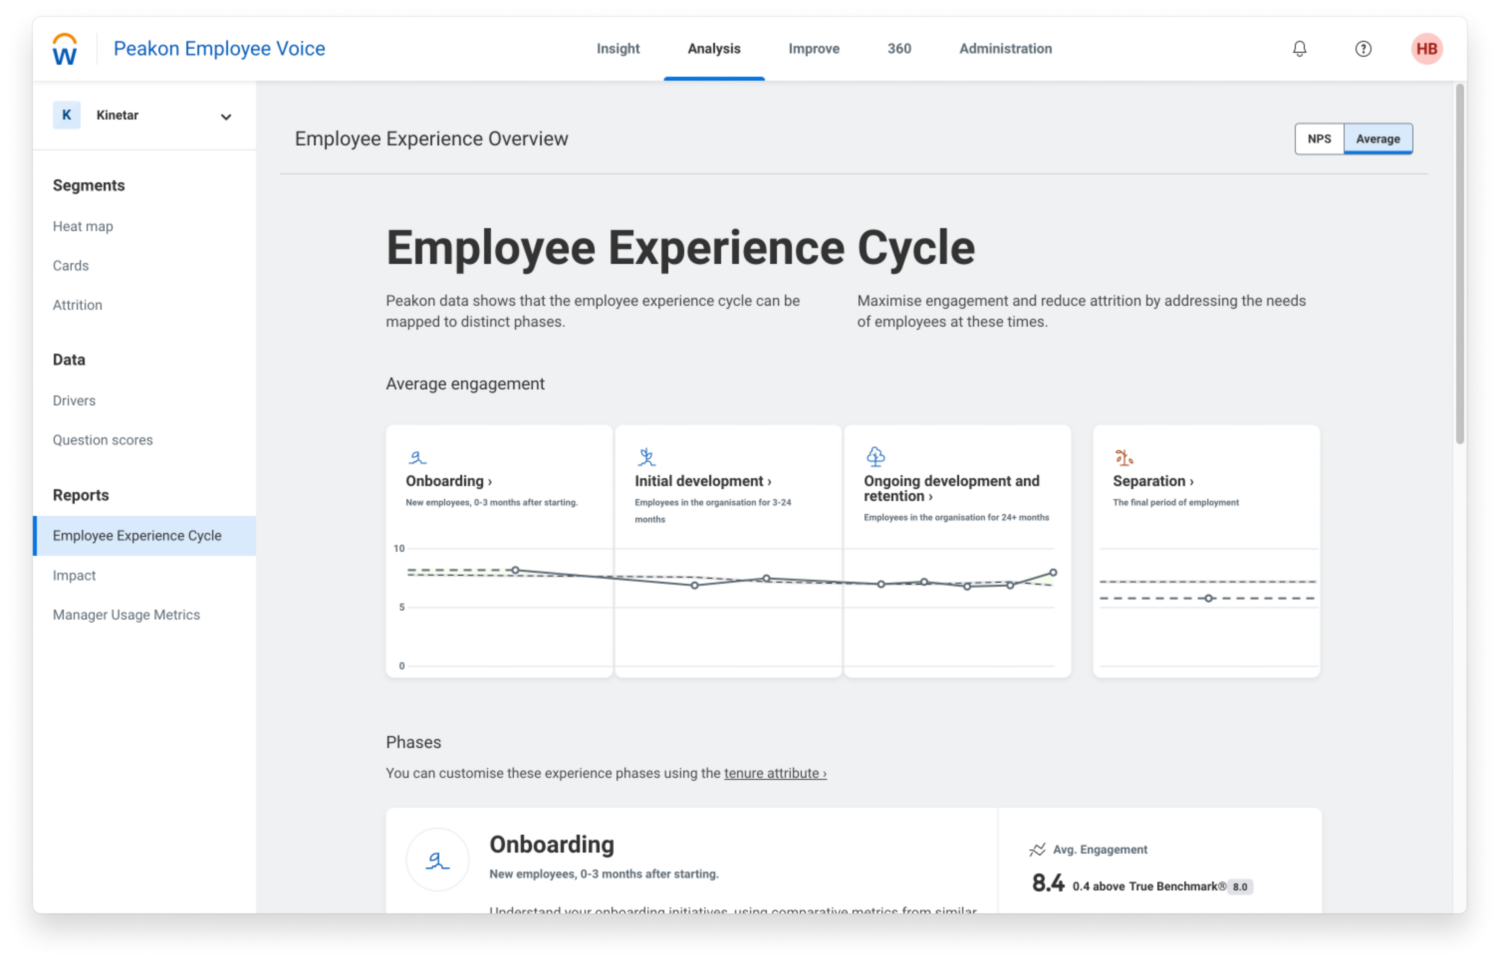 Dashboard von Workday Peakon Employee Voice, das Engagement-Kennzahlen für den Zyklus der Mitarbeitererfahrung anzeigt.